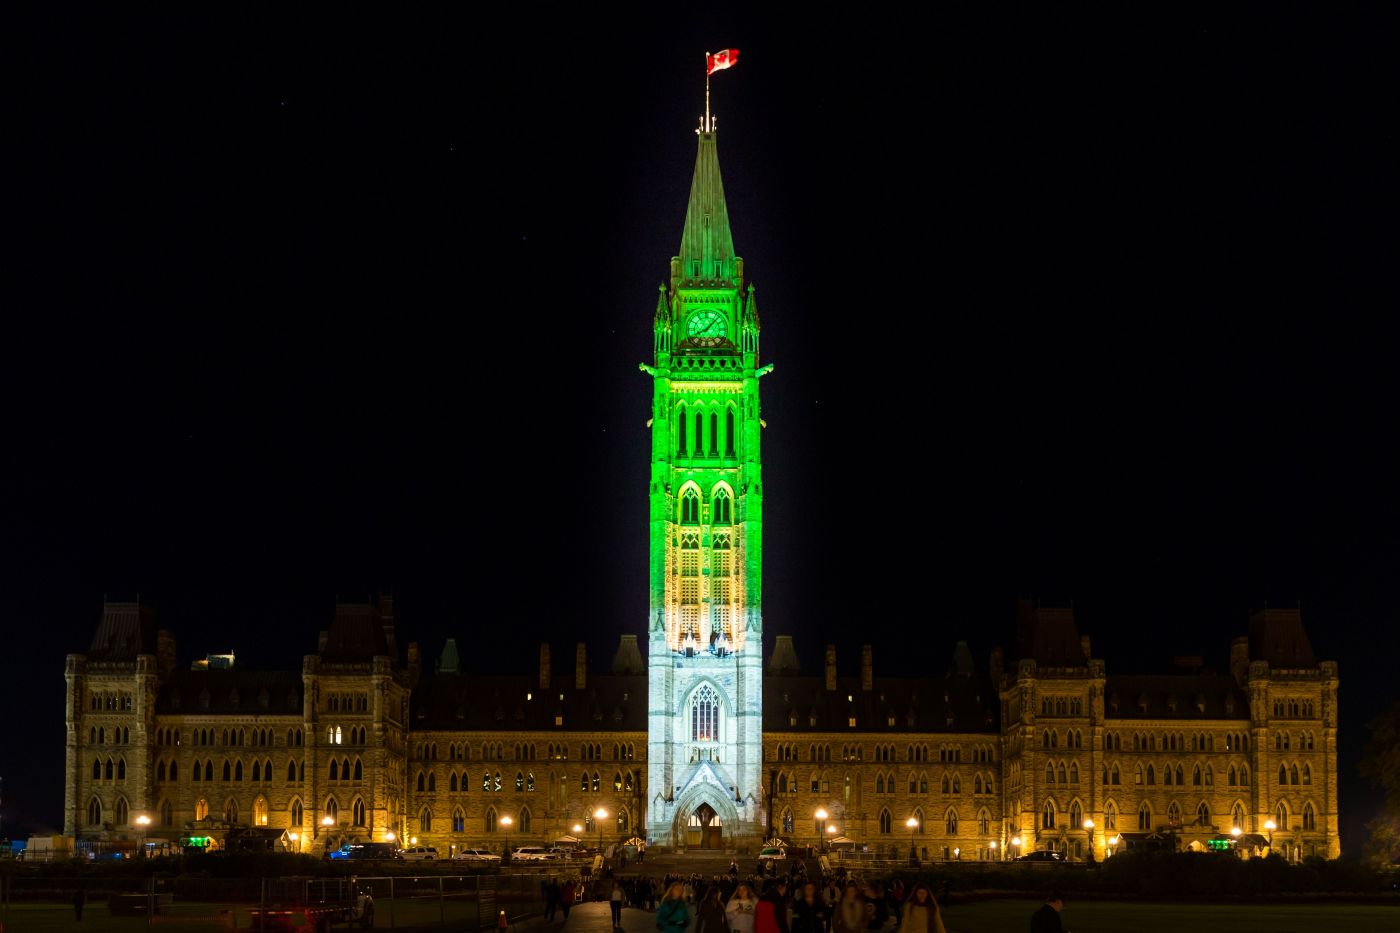 Photographie en couleur d’un édifice imposant, la nuit. L’édifice de six étages est en pierre. Une tour se trouve en son centre. Un drapeau du Canada y flotte. La tour est éclairée en bleu et en vert.